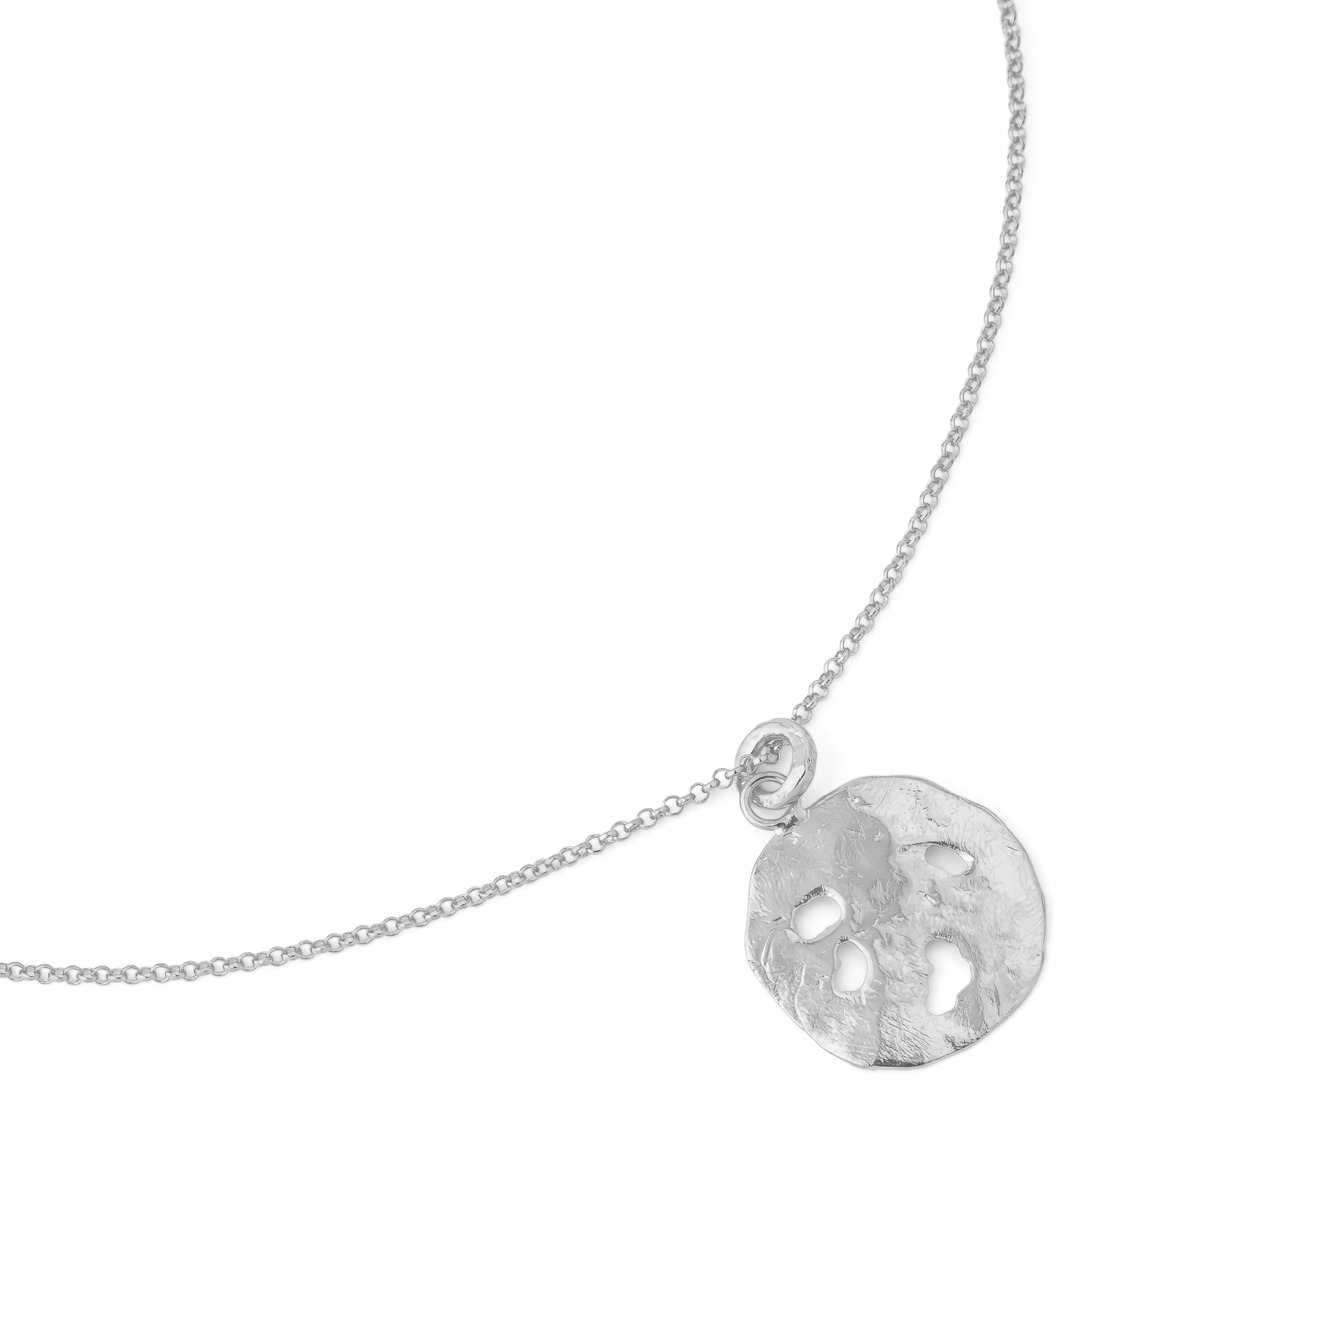 Sevenworlds Подвеска Pura Vida Medallion из бронзы с серебряным покрытием sevenworlds кольцо из бронзы с серебряным покрытием starfruit